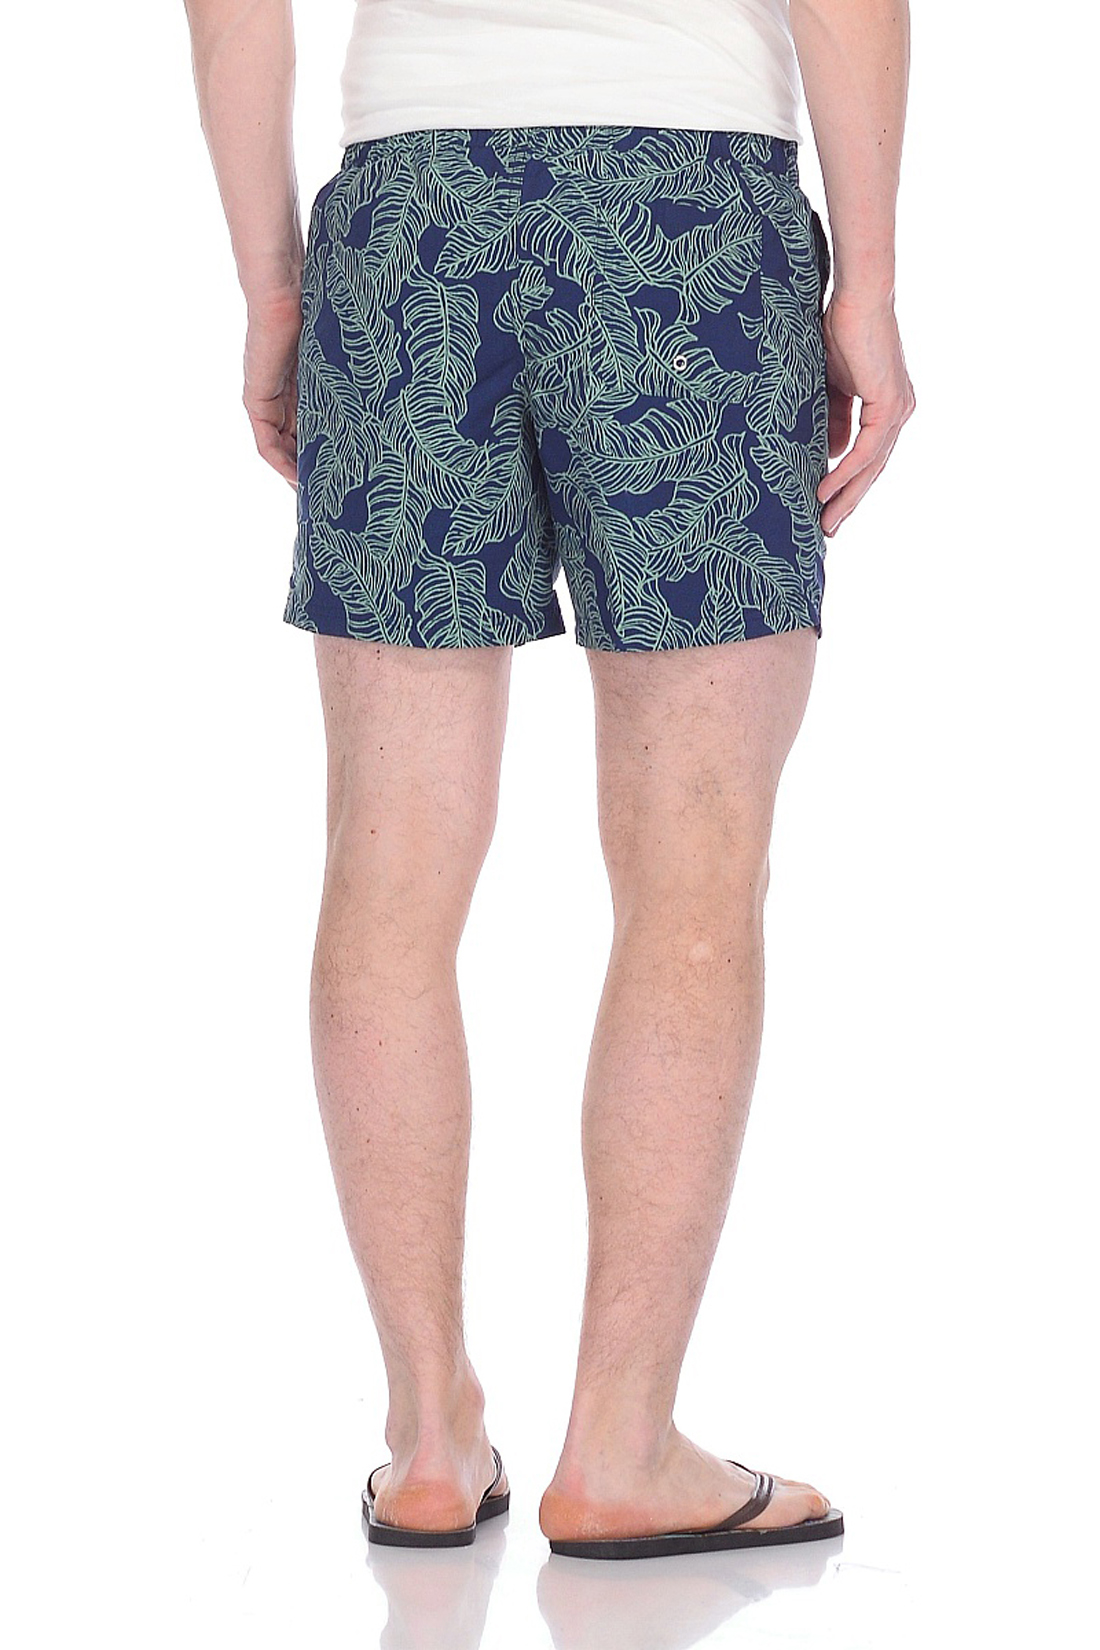 Купальные шорты с растительным принтом (арт. baon B828026), размер S, цвет синий Купальные шорты с растительным принтом (арт. baon B828026) - фото 2